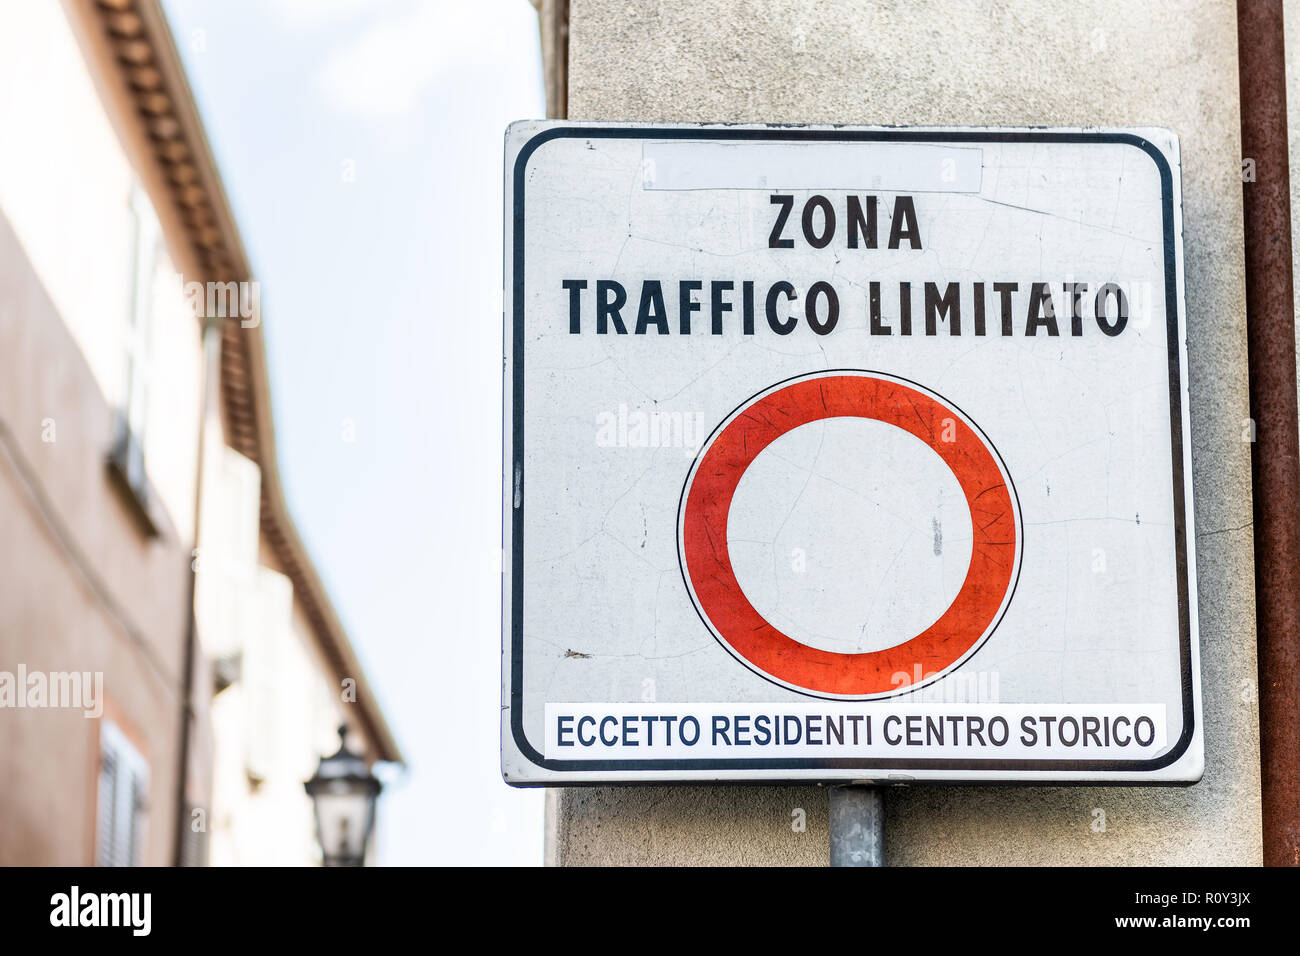 Zona Traffico Limitato, zone de circulation limitée s'identifier peu, petite ville italienne historique pour voitures restreignant, centre historique d'Orvieto, Italie Banque D'Images